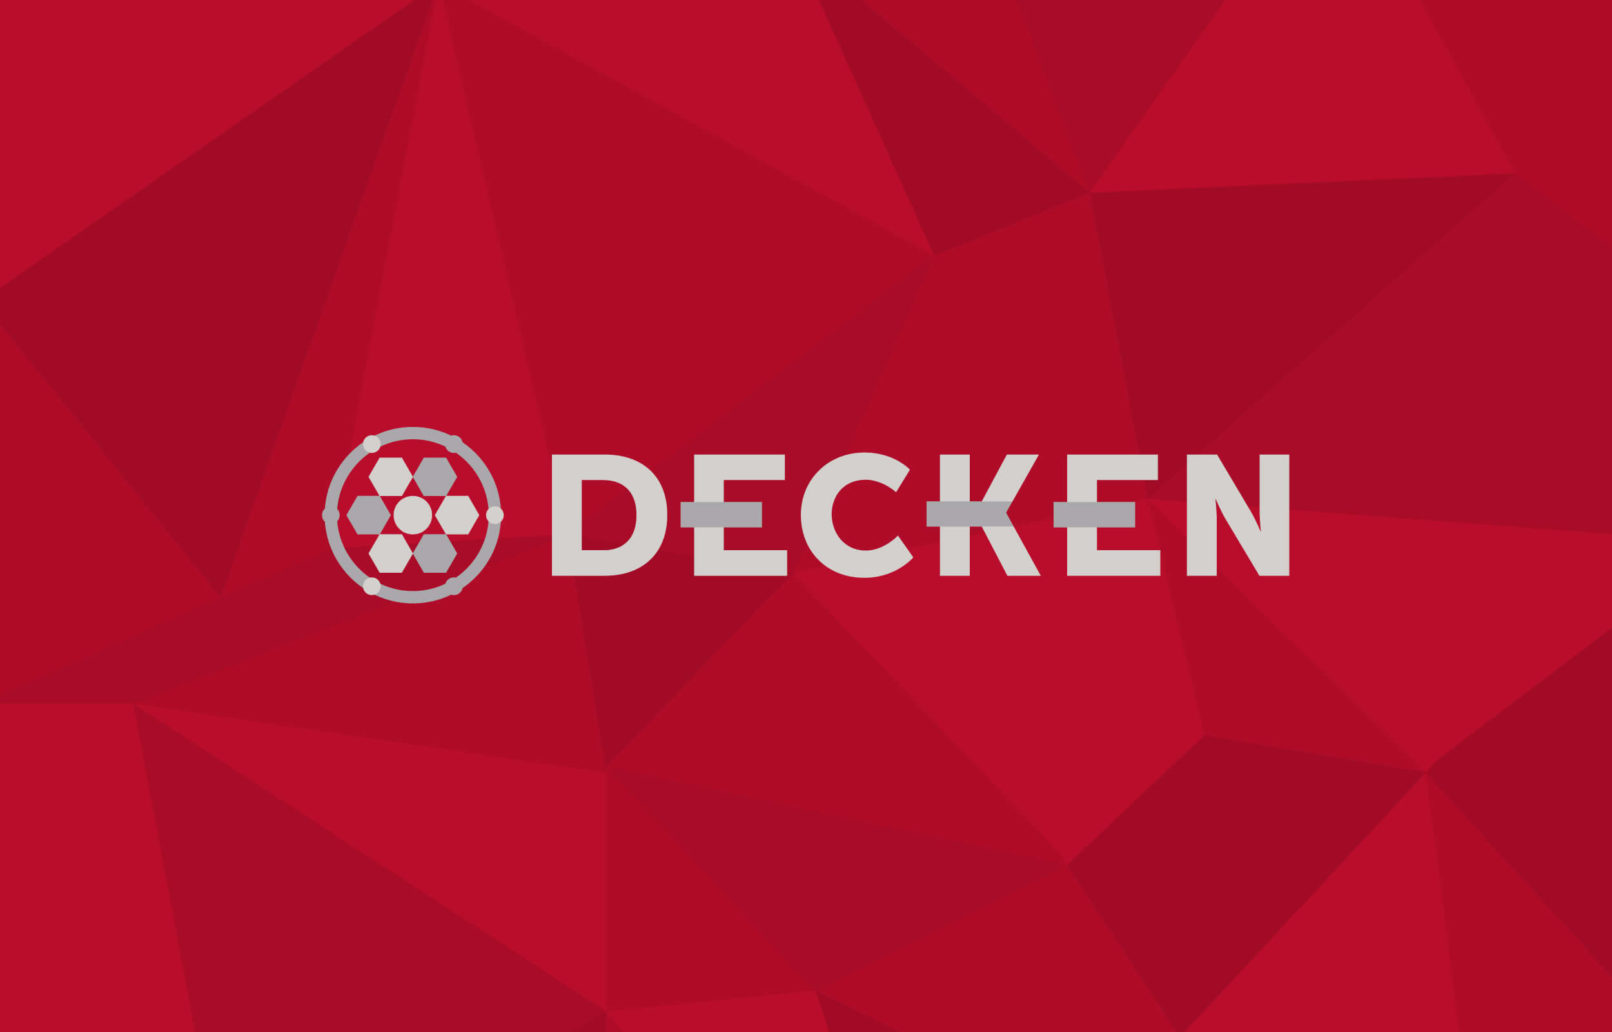 Decken Logo and Package design